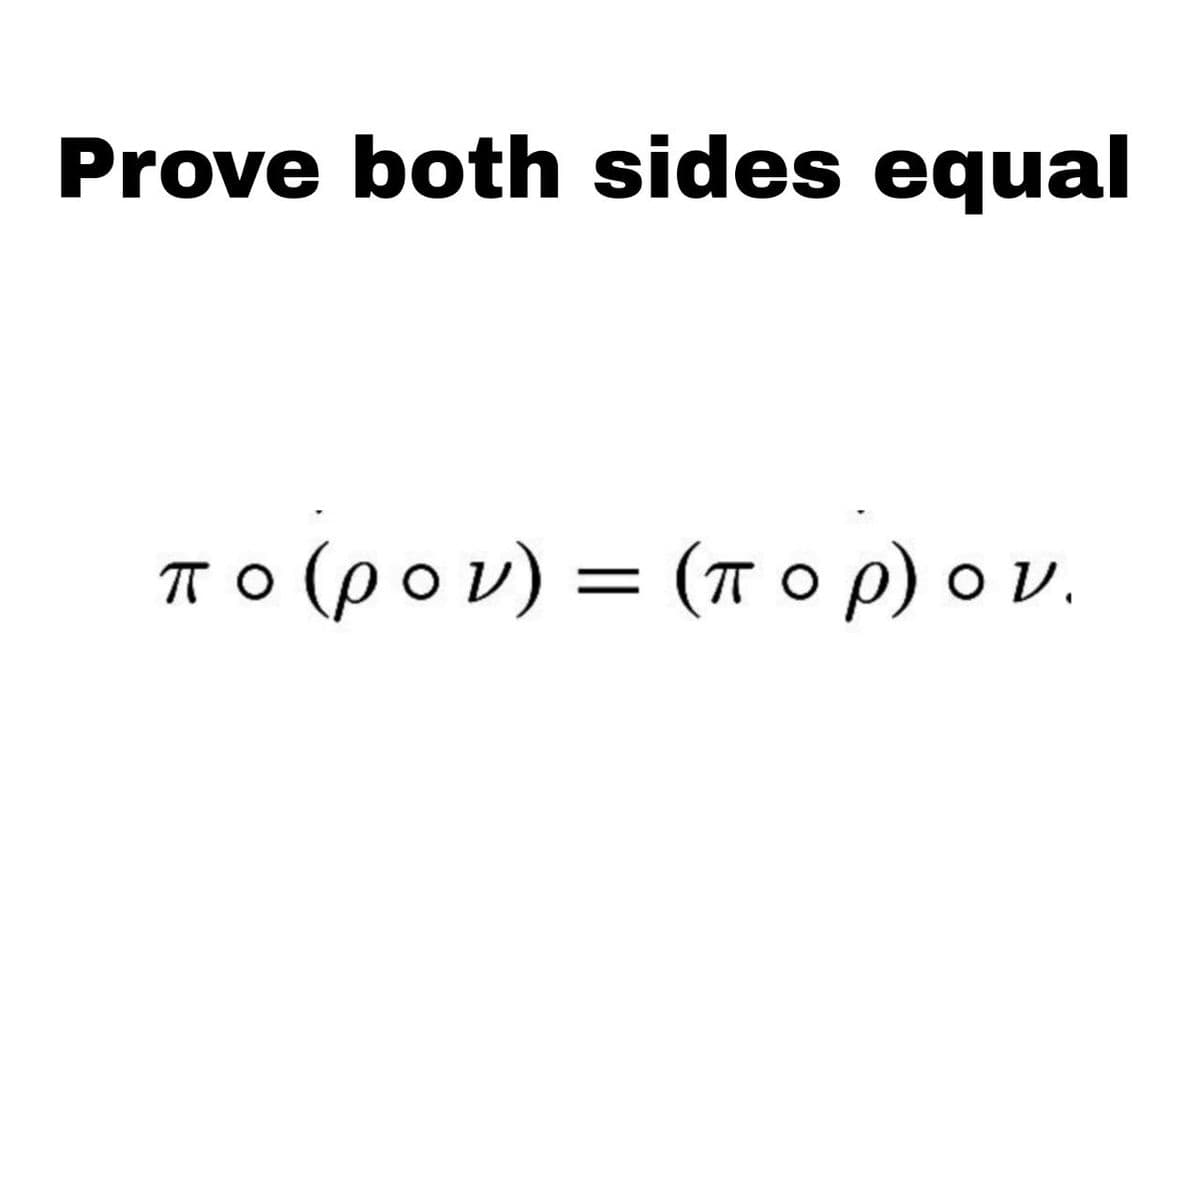 Prove both sides equal
πο(ρον) = (πορ)ον